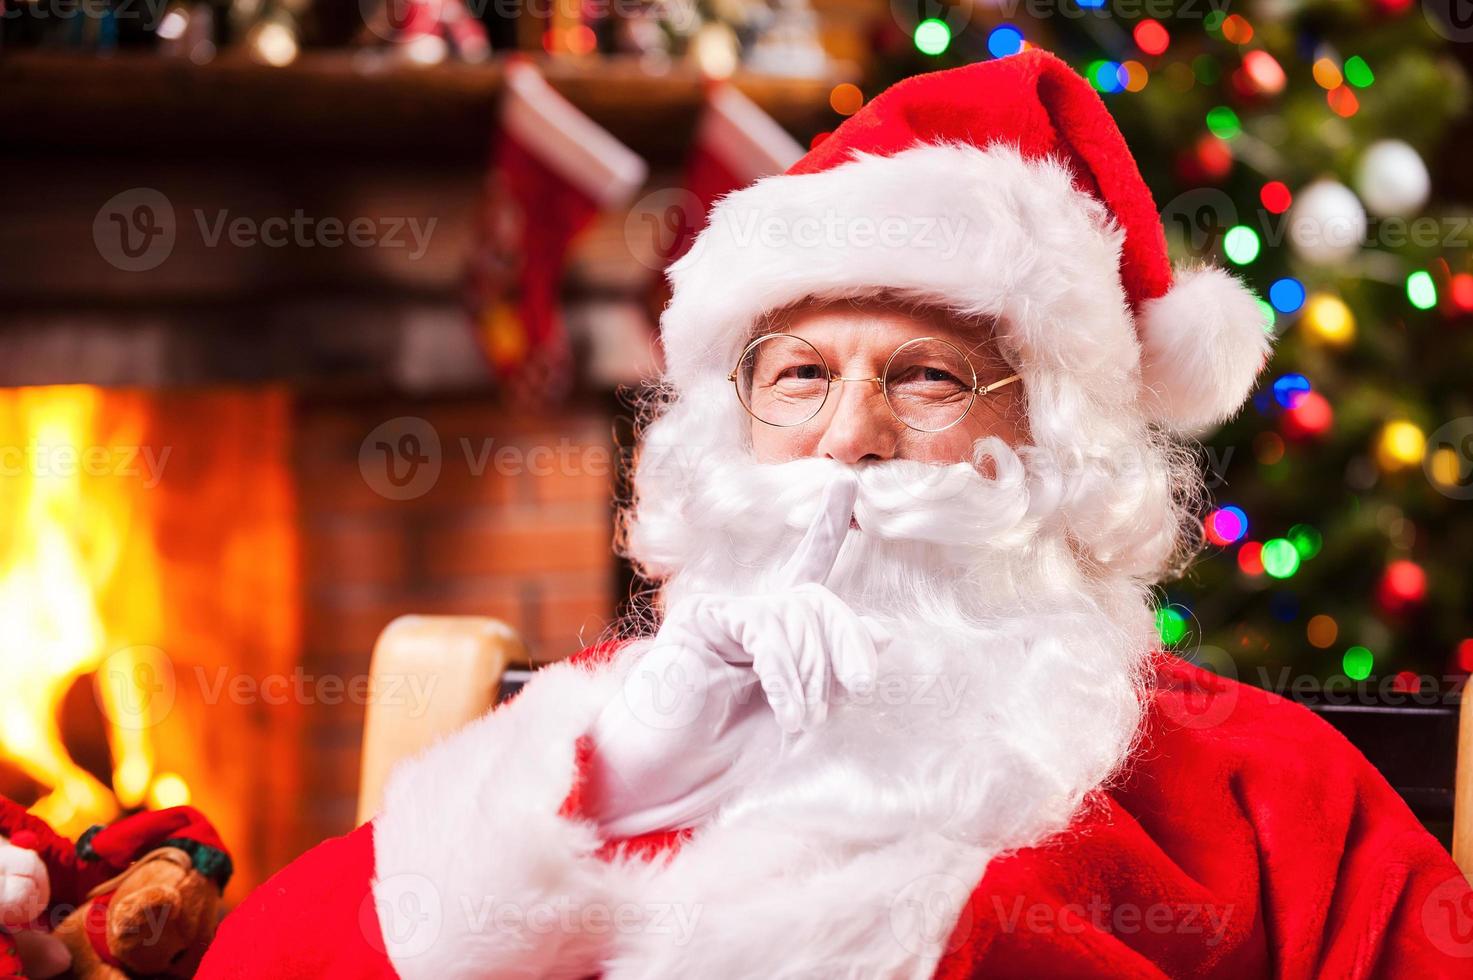 Sie haben mich nicht gesehen, wie der traditionelle Weihnachtsmann ein Schweigezeichen gestikulierte, während er auf seinem Stuhl mit Kamin und Weihnachtsbaum im Hintergrund saß foto